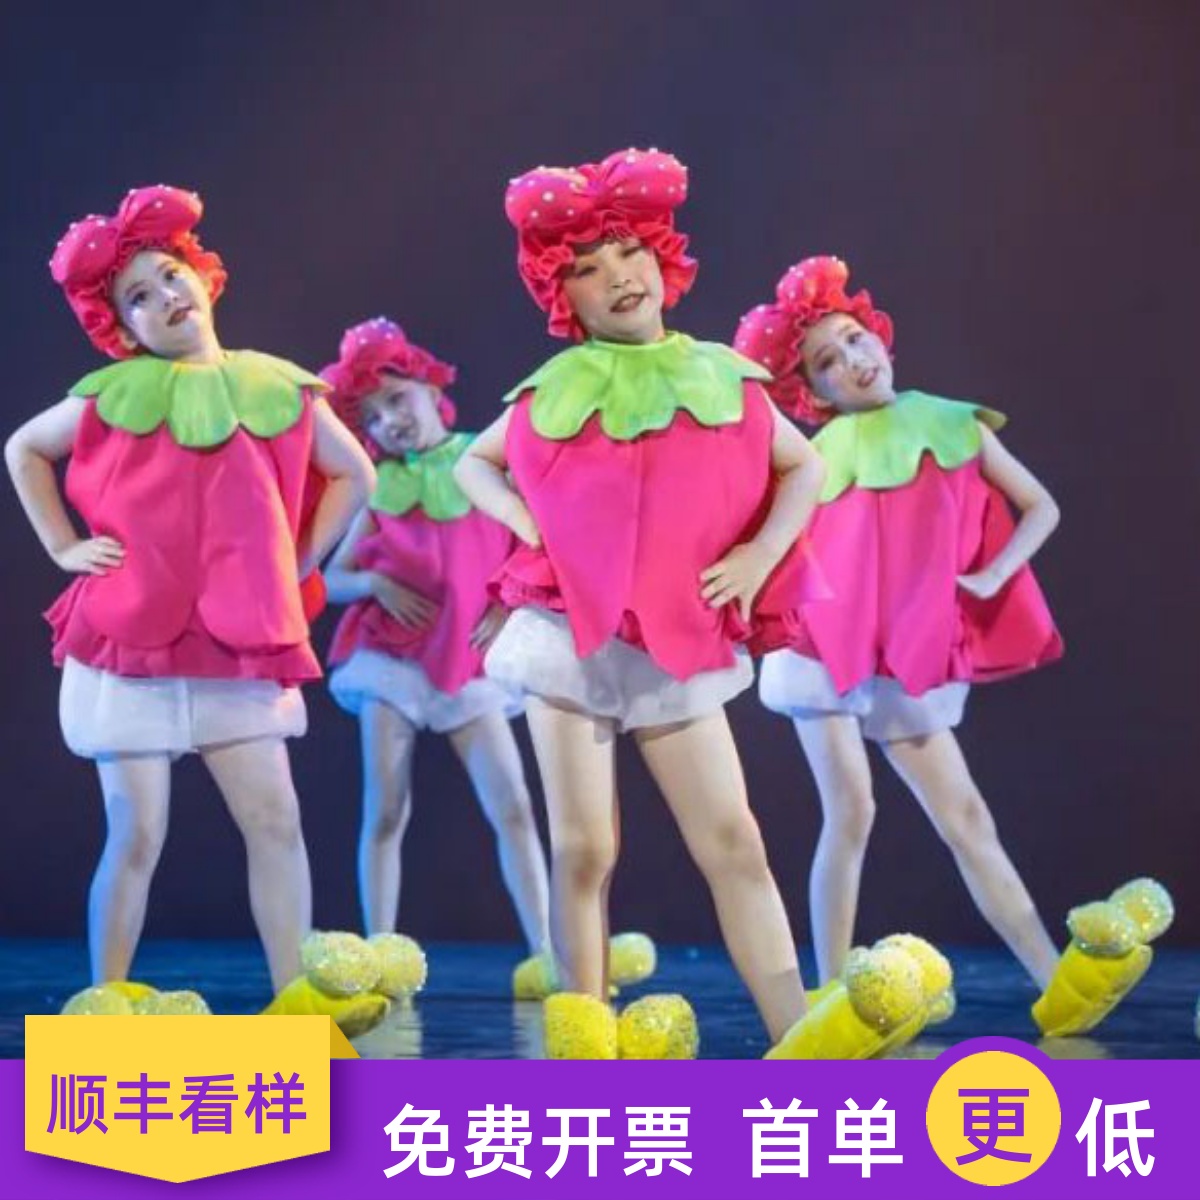 小荷风采脚脚会唱歌儿童演出服幼儿女童表演服新款可爱的舞蹈服装